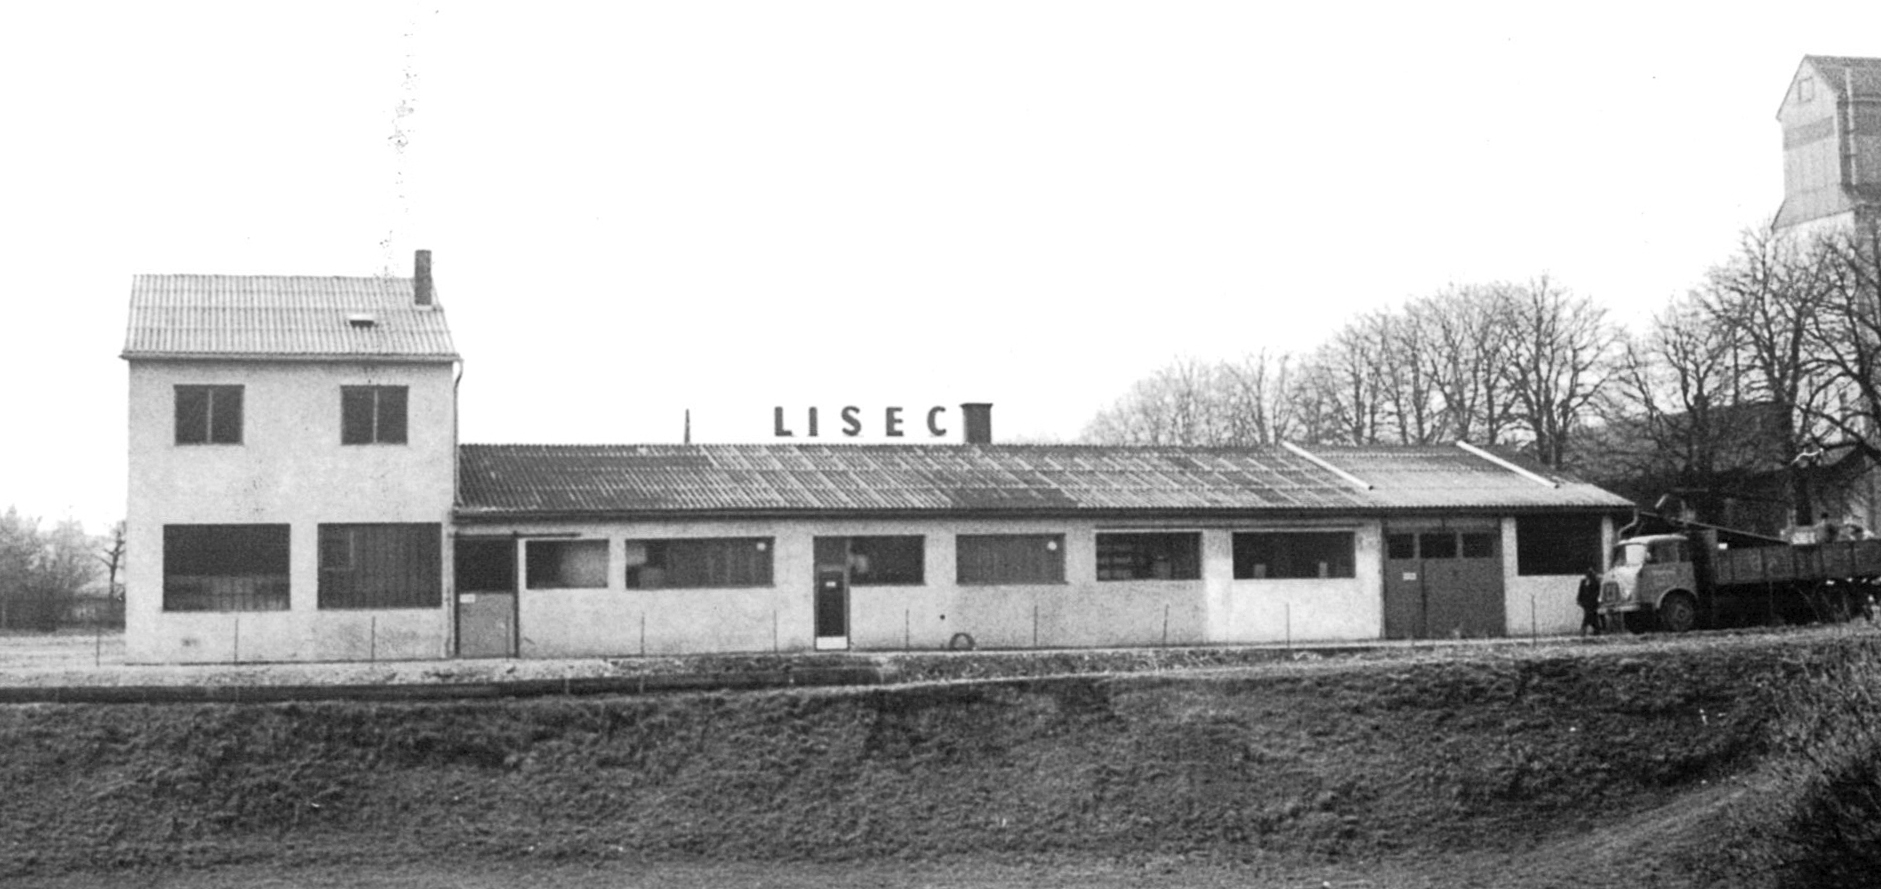 LiSEC